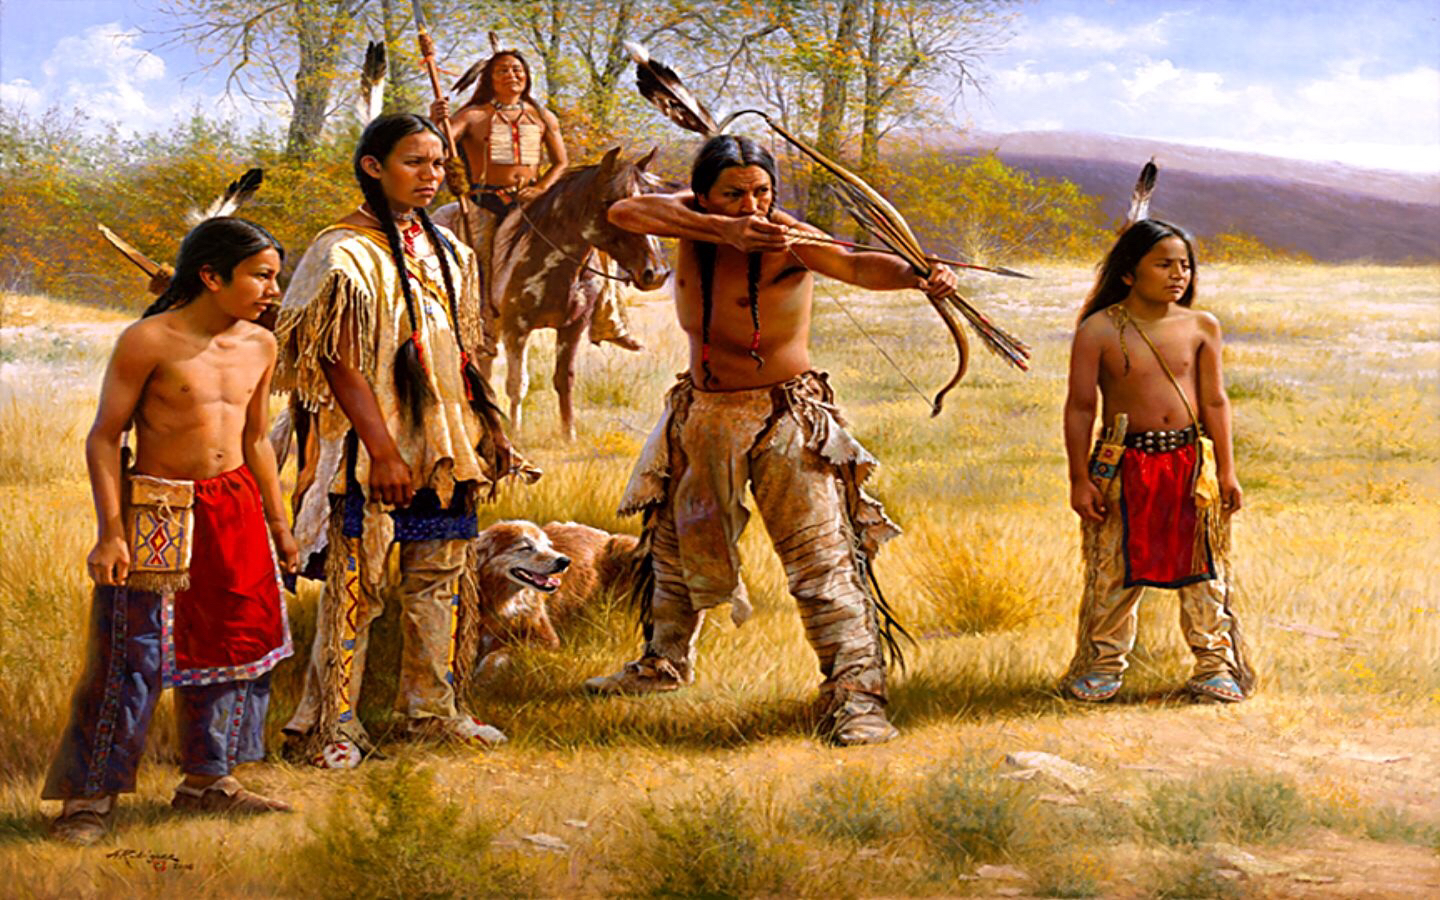 Коренные жители Америки индейцы